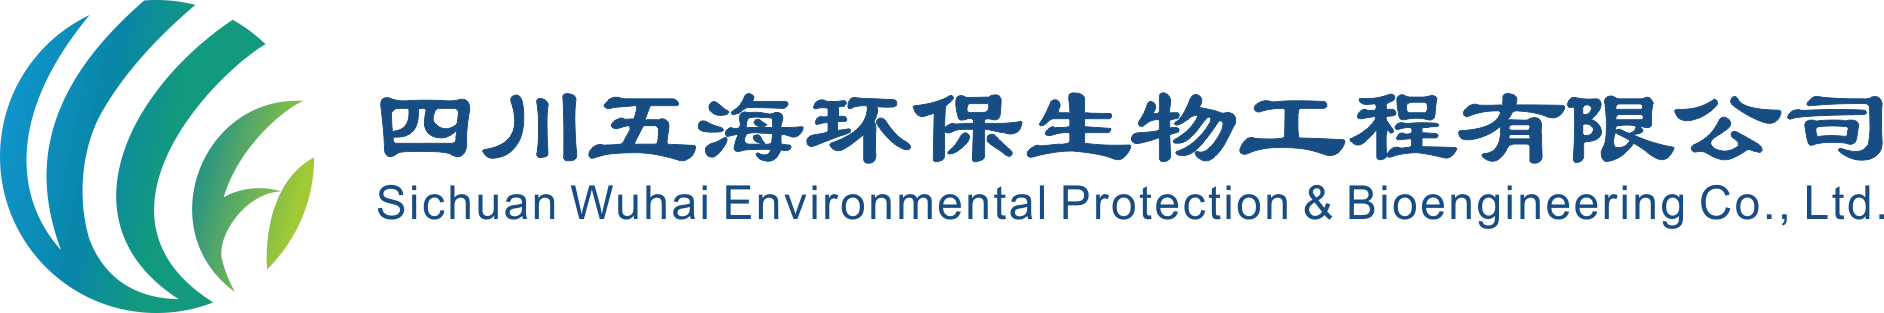 四川五海环保生物工程有限公司